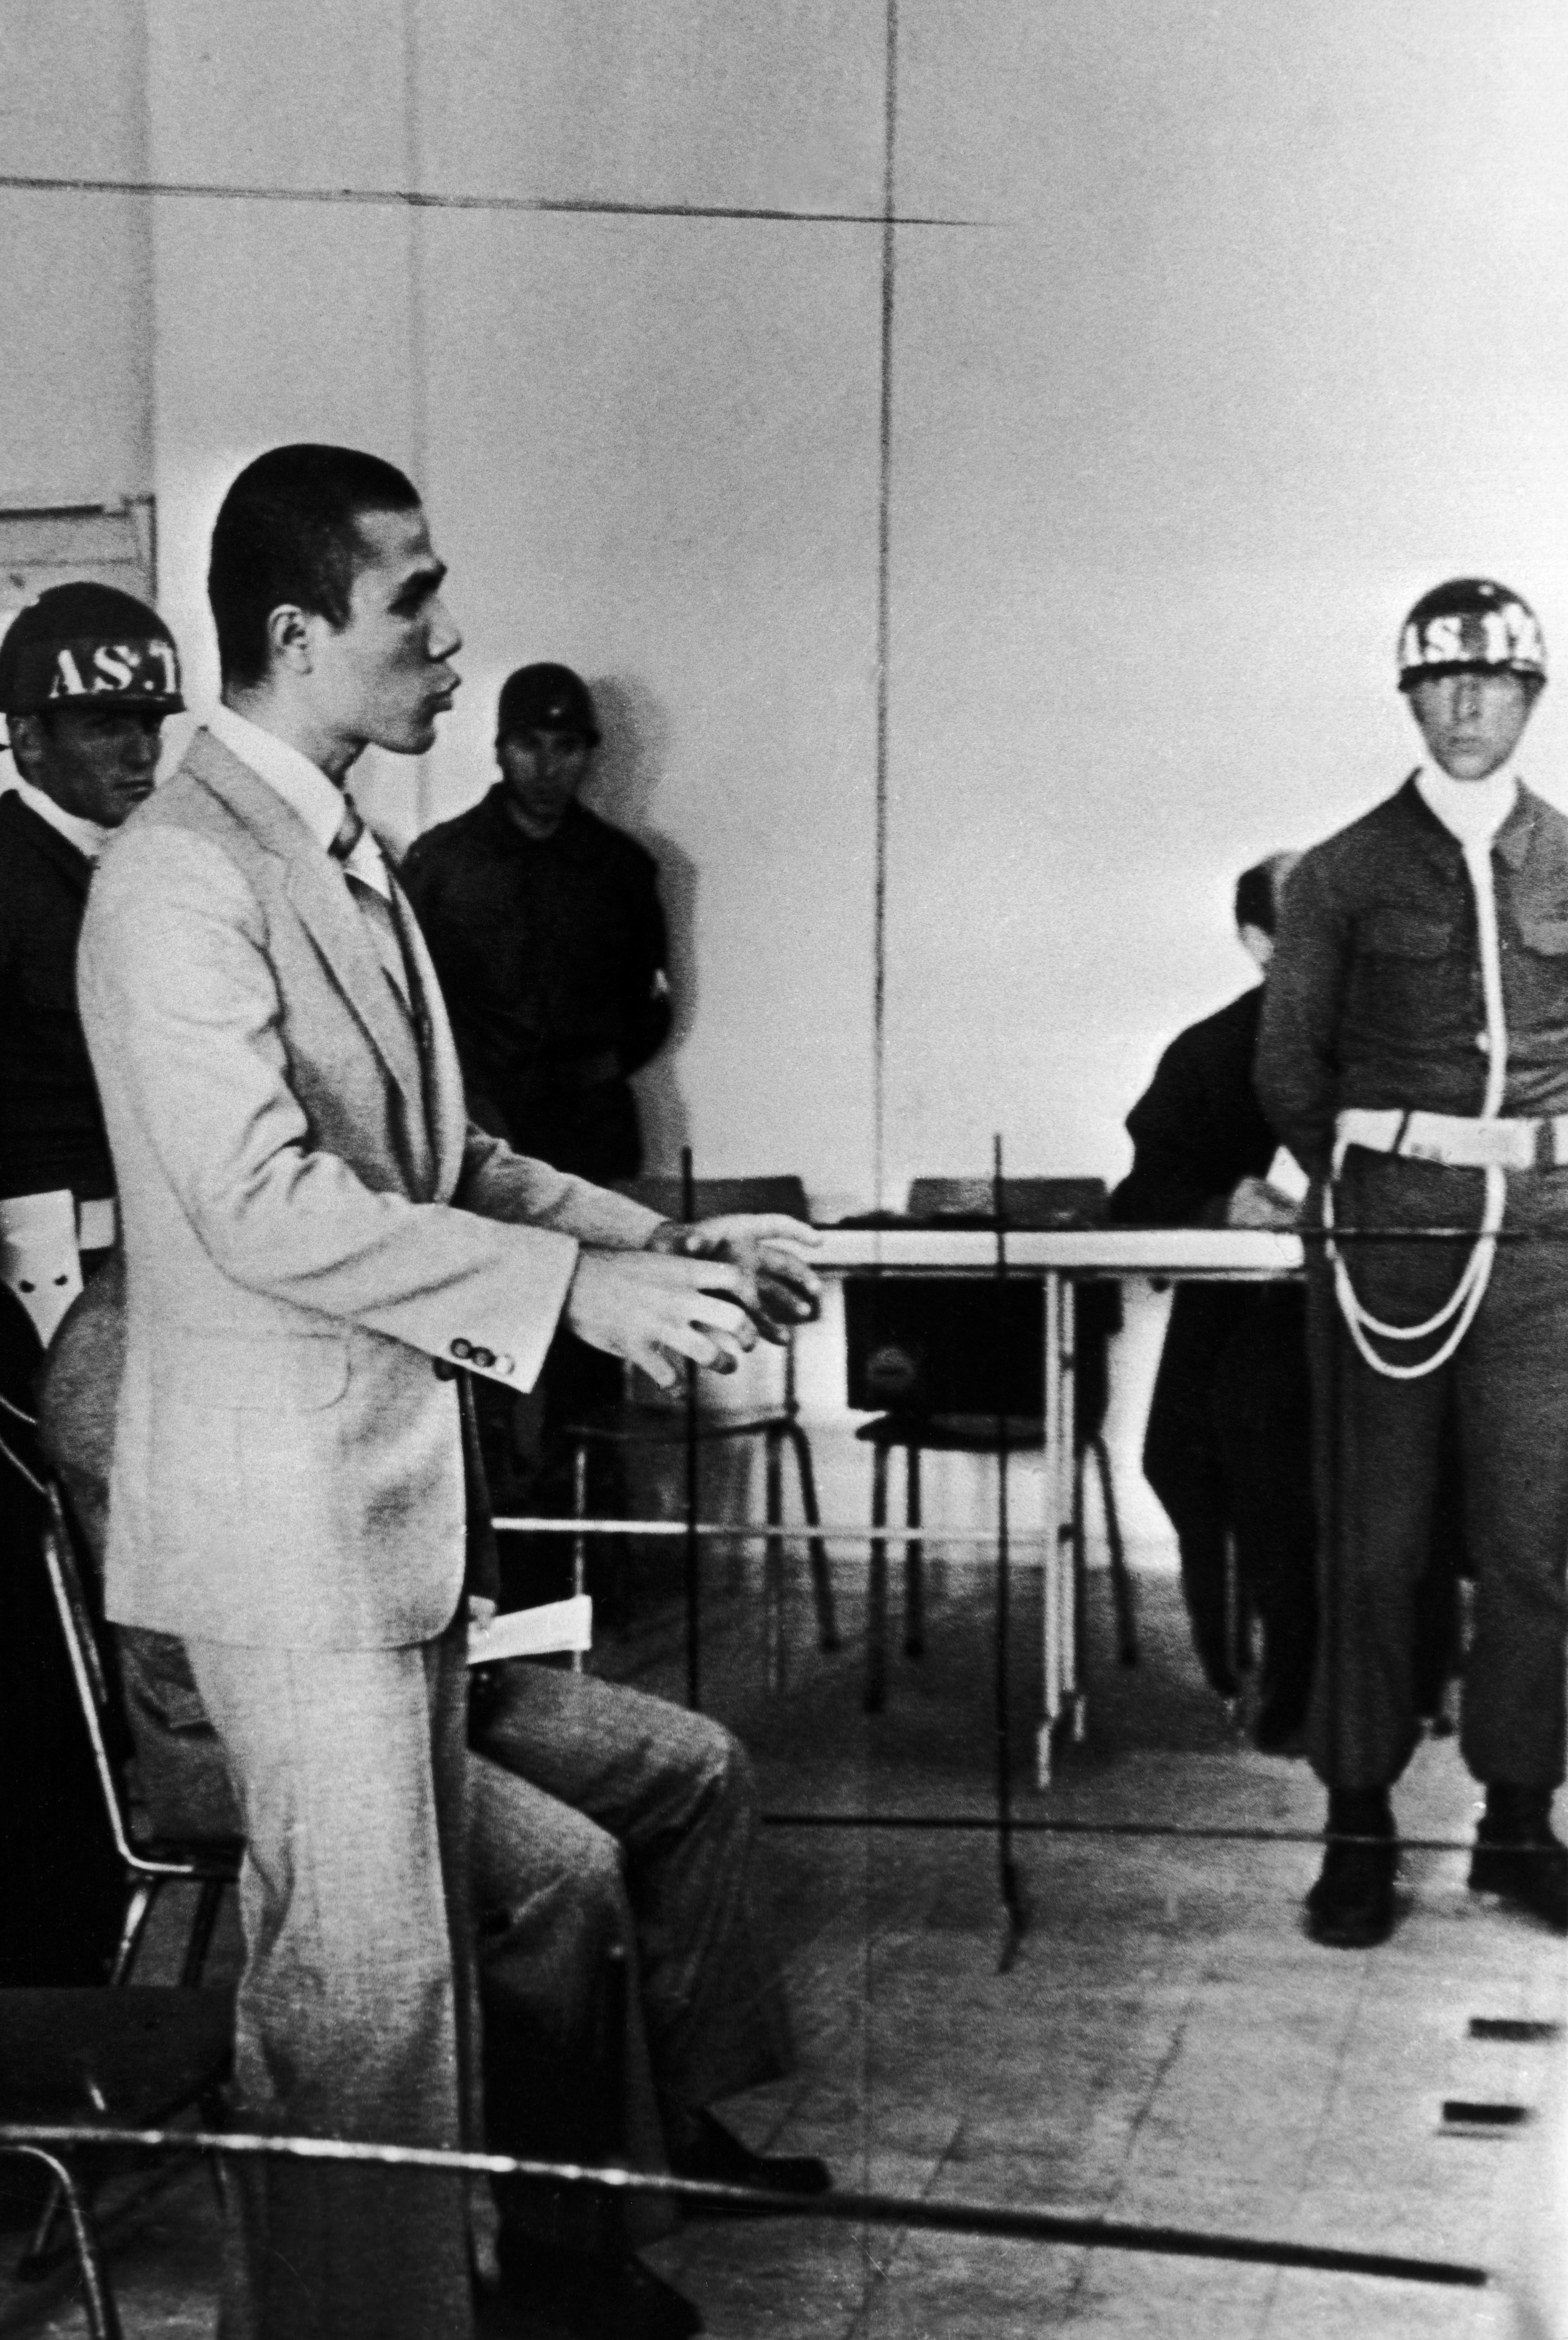 Ali Agca durante un processo in Turchia nel 1979, per l’omicidio di un direttore di un giornale di sinistra. Viene condannato e in seguito evade